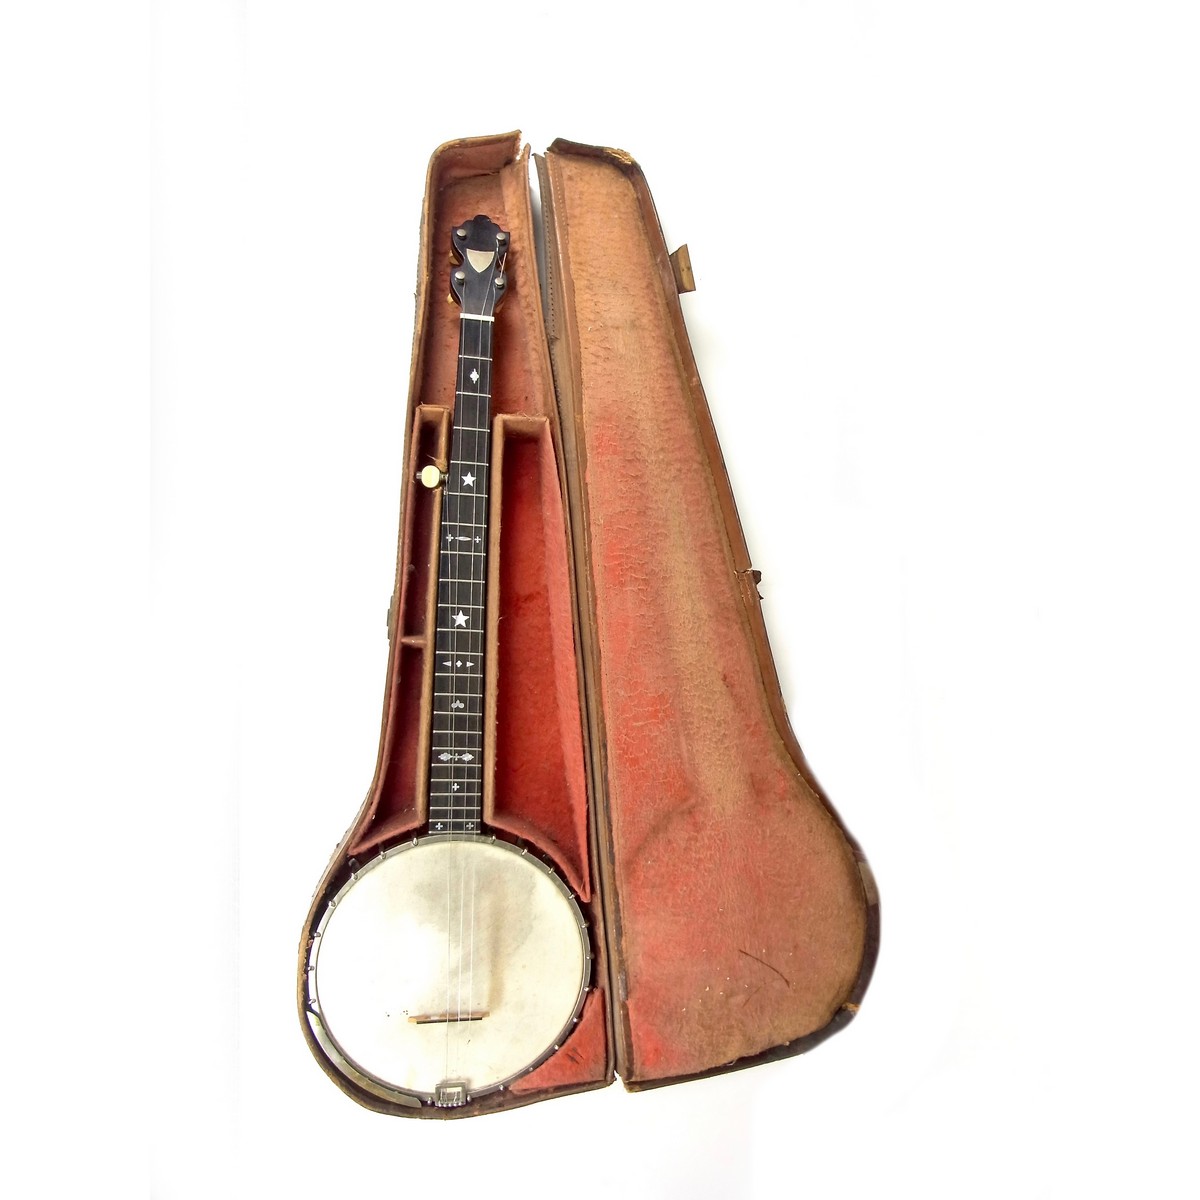 A Banjo by Dexter of London.